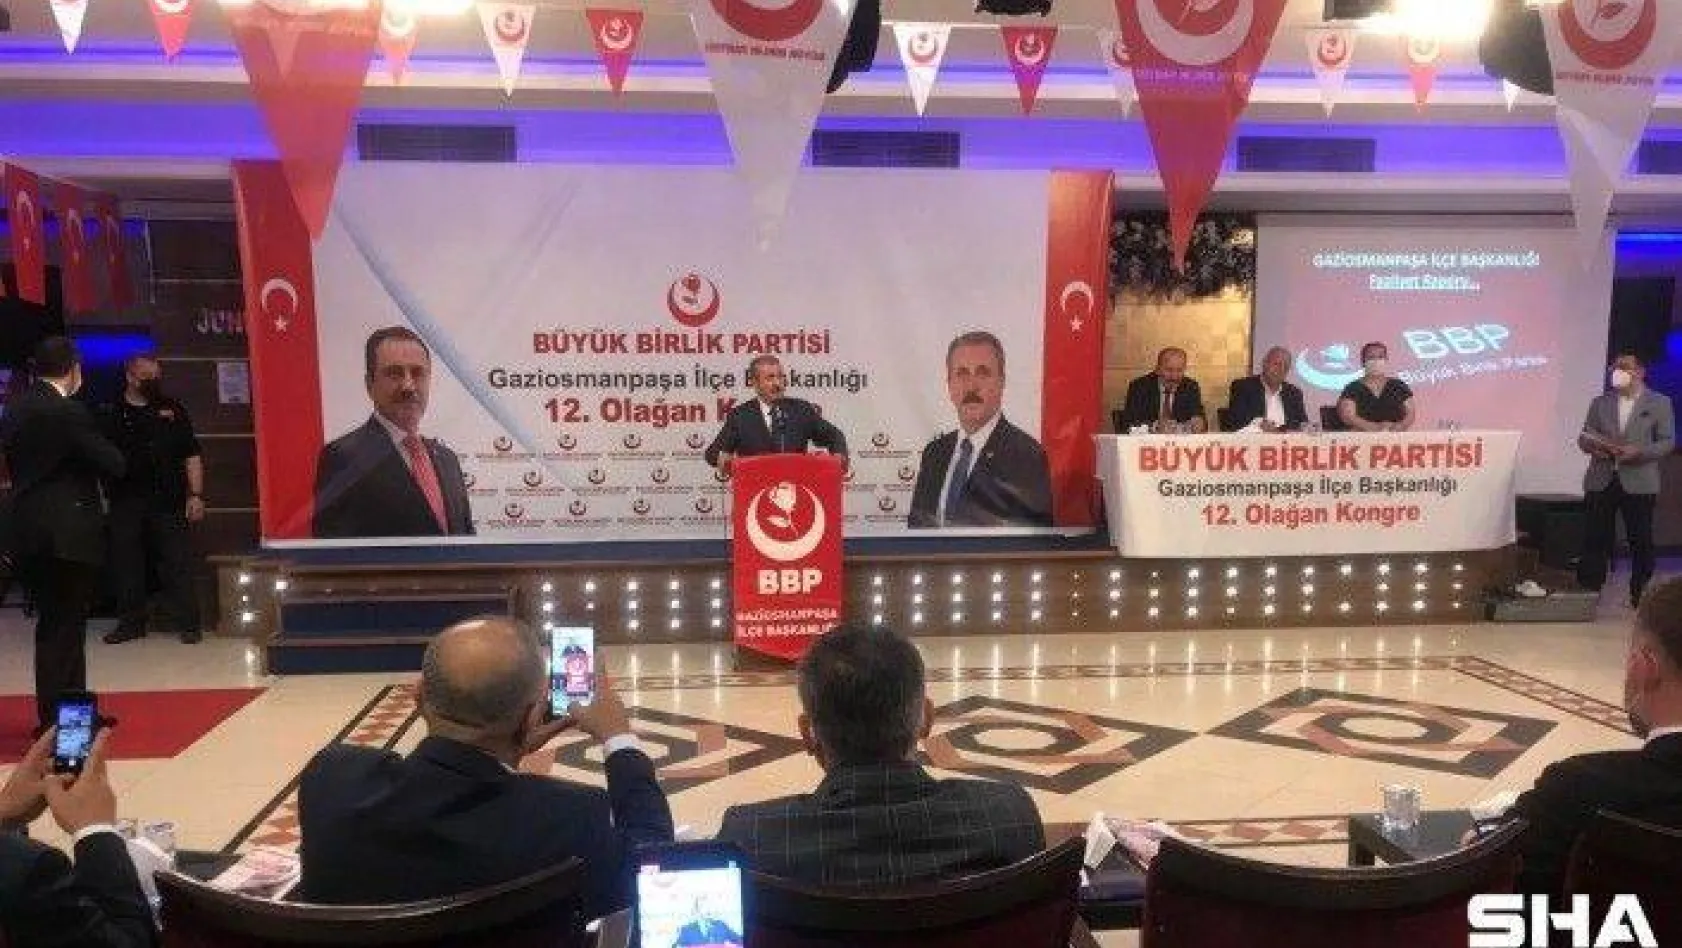 BBP Genel Başkanı Mustafa Destici: 'Biz HDP, PKK'nın partisi olduğu için kapatılsın diyoruz'